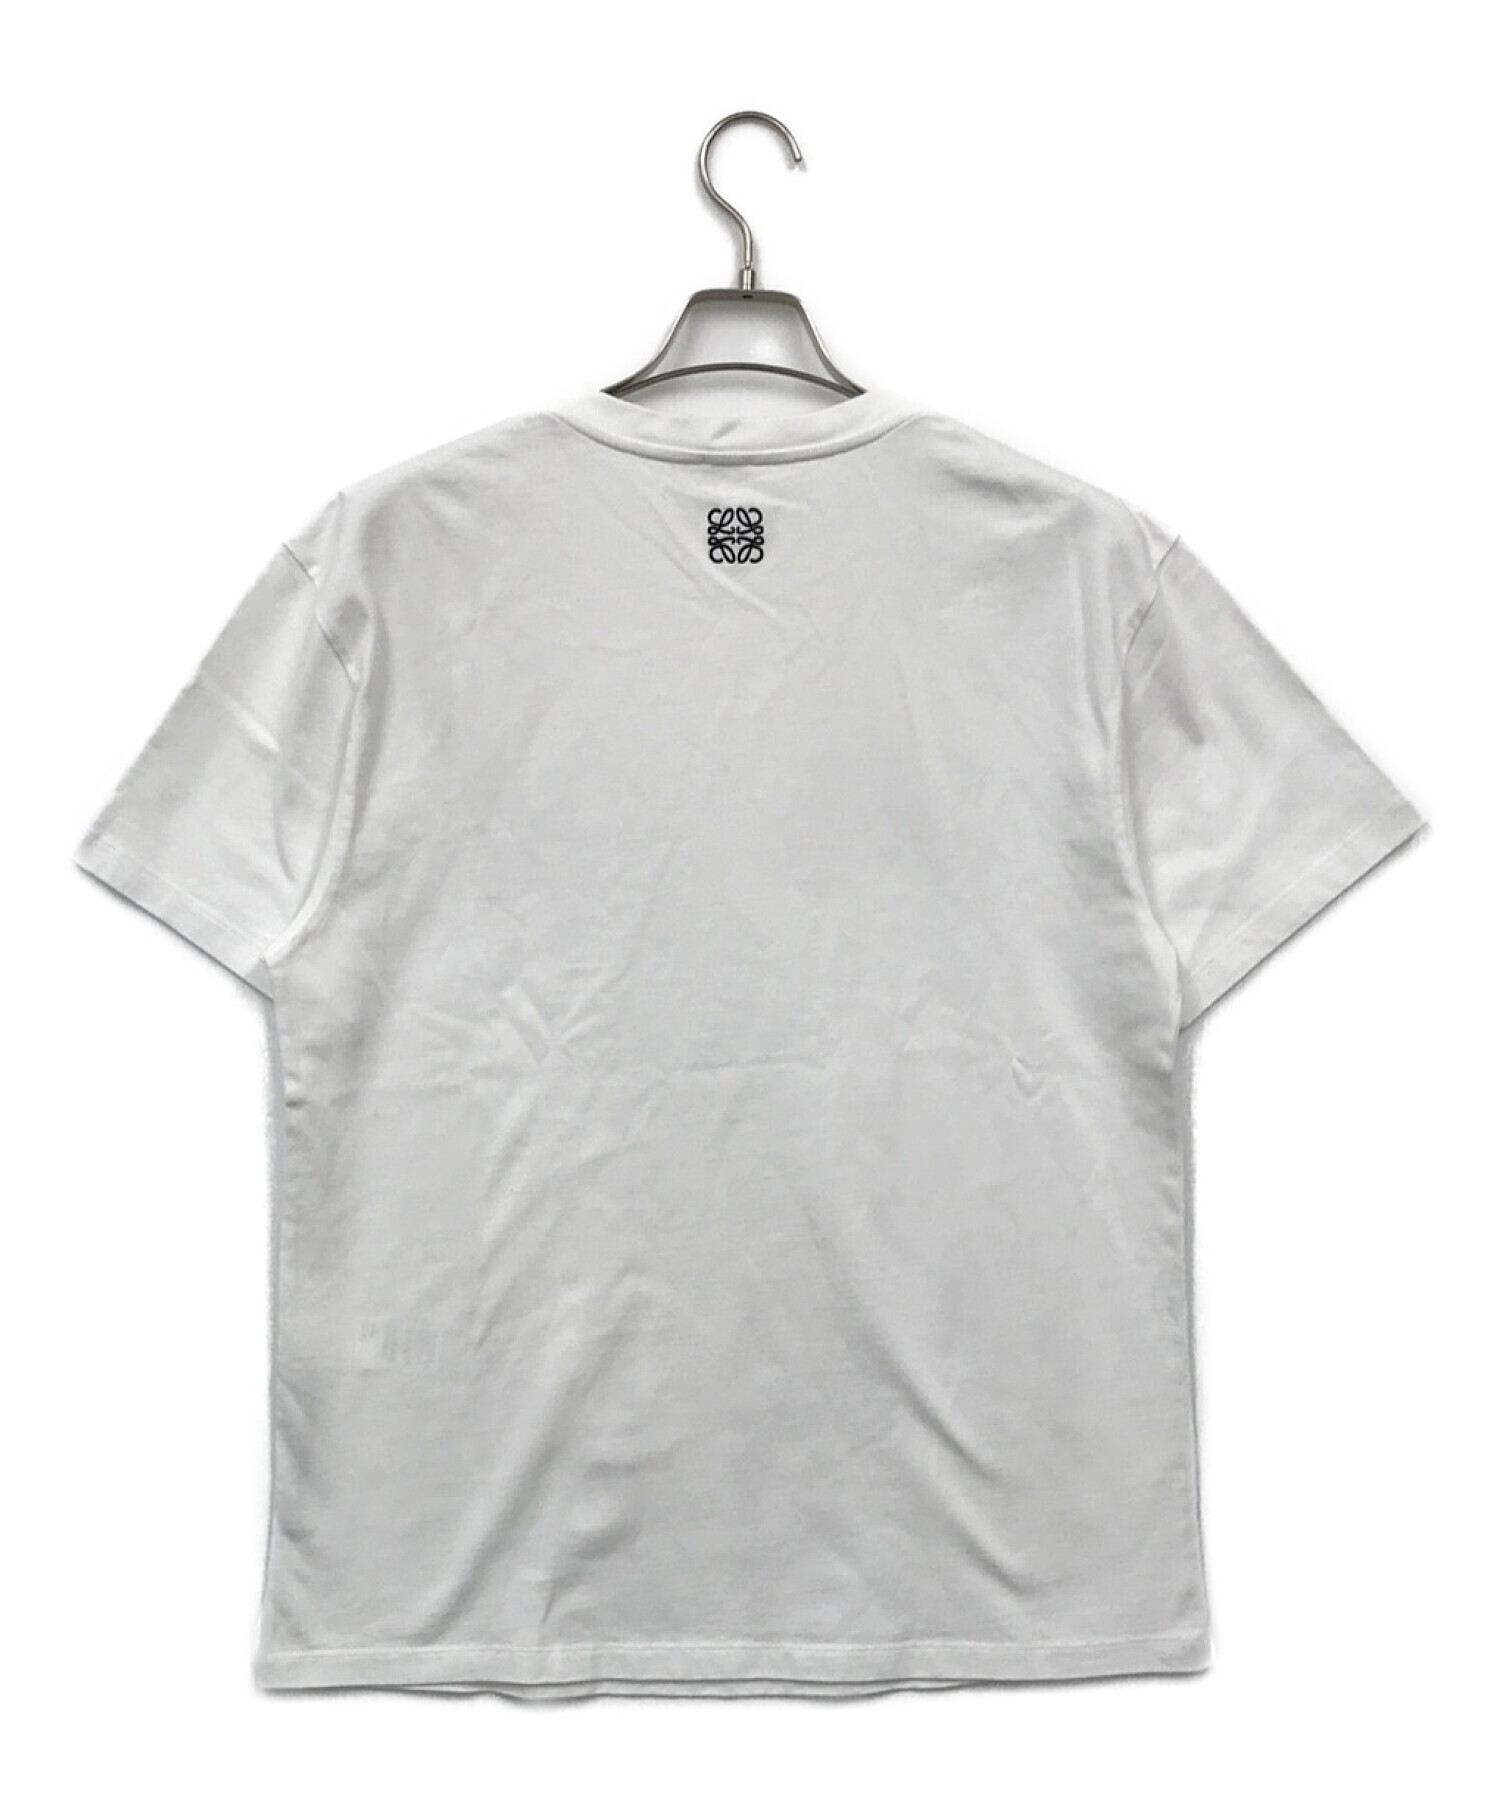 LOEWE (ロエベ) キャンドルプリントtシャツ ホワイト サイズ:M